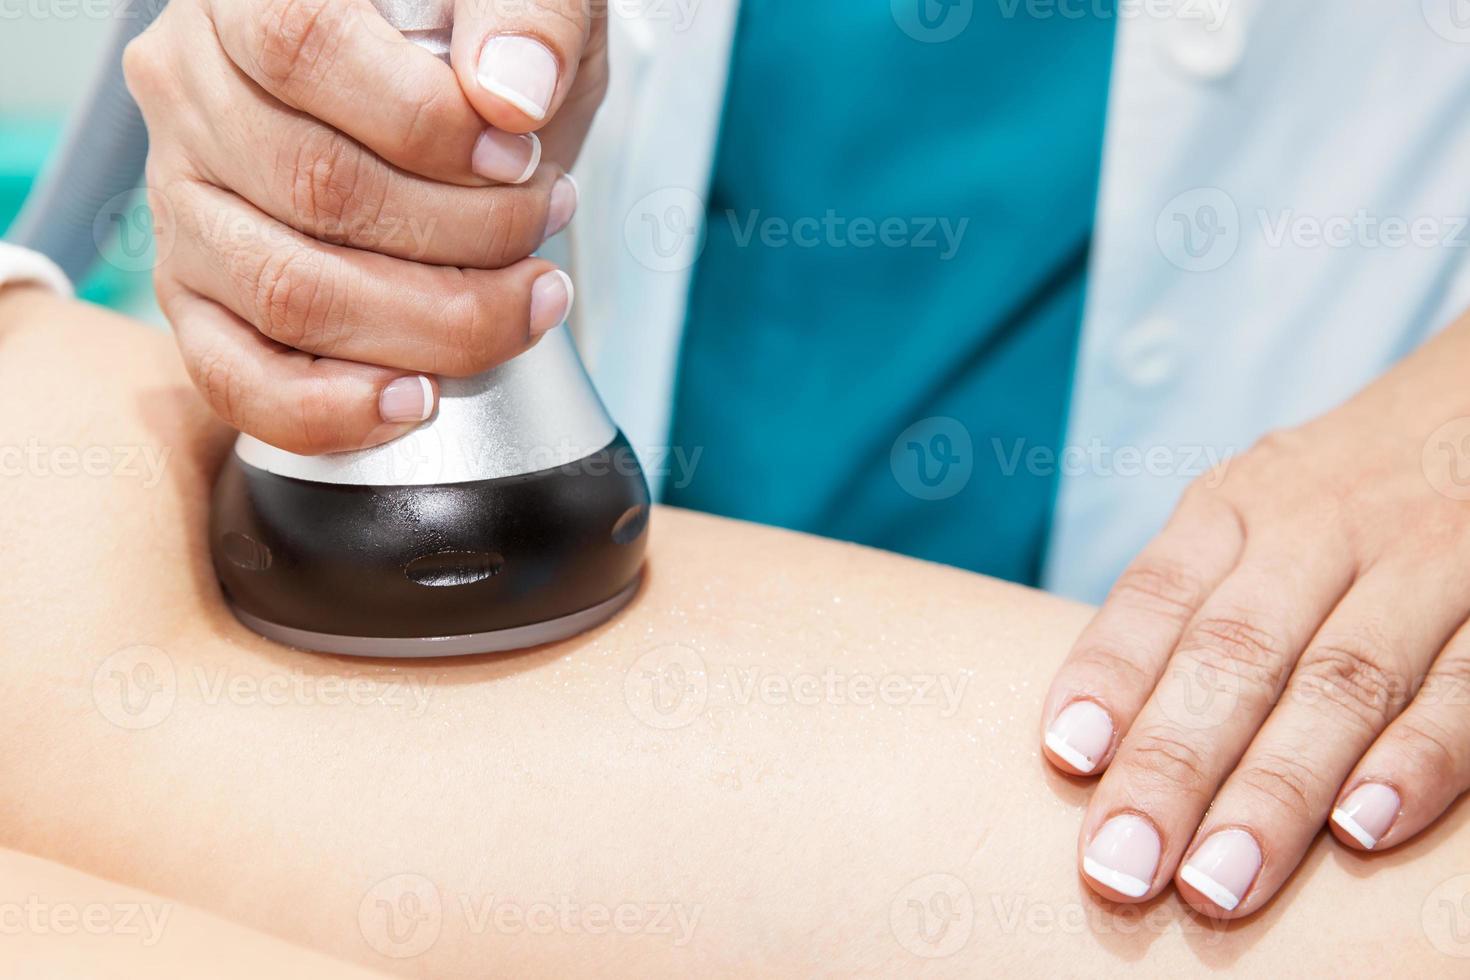 läkare utför ett ultrakavitation behandling på en ung kvinna patient ben foto